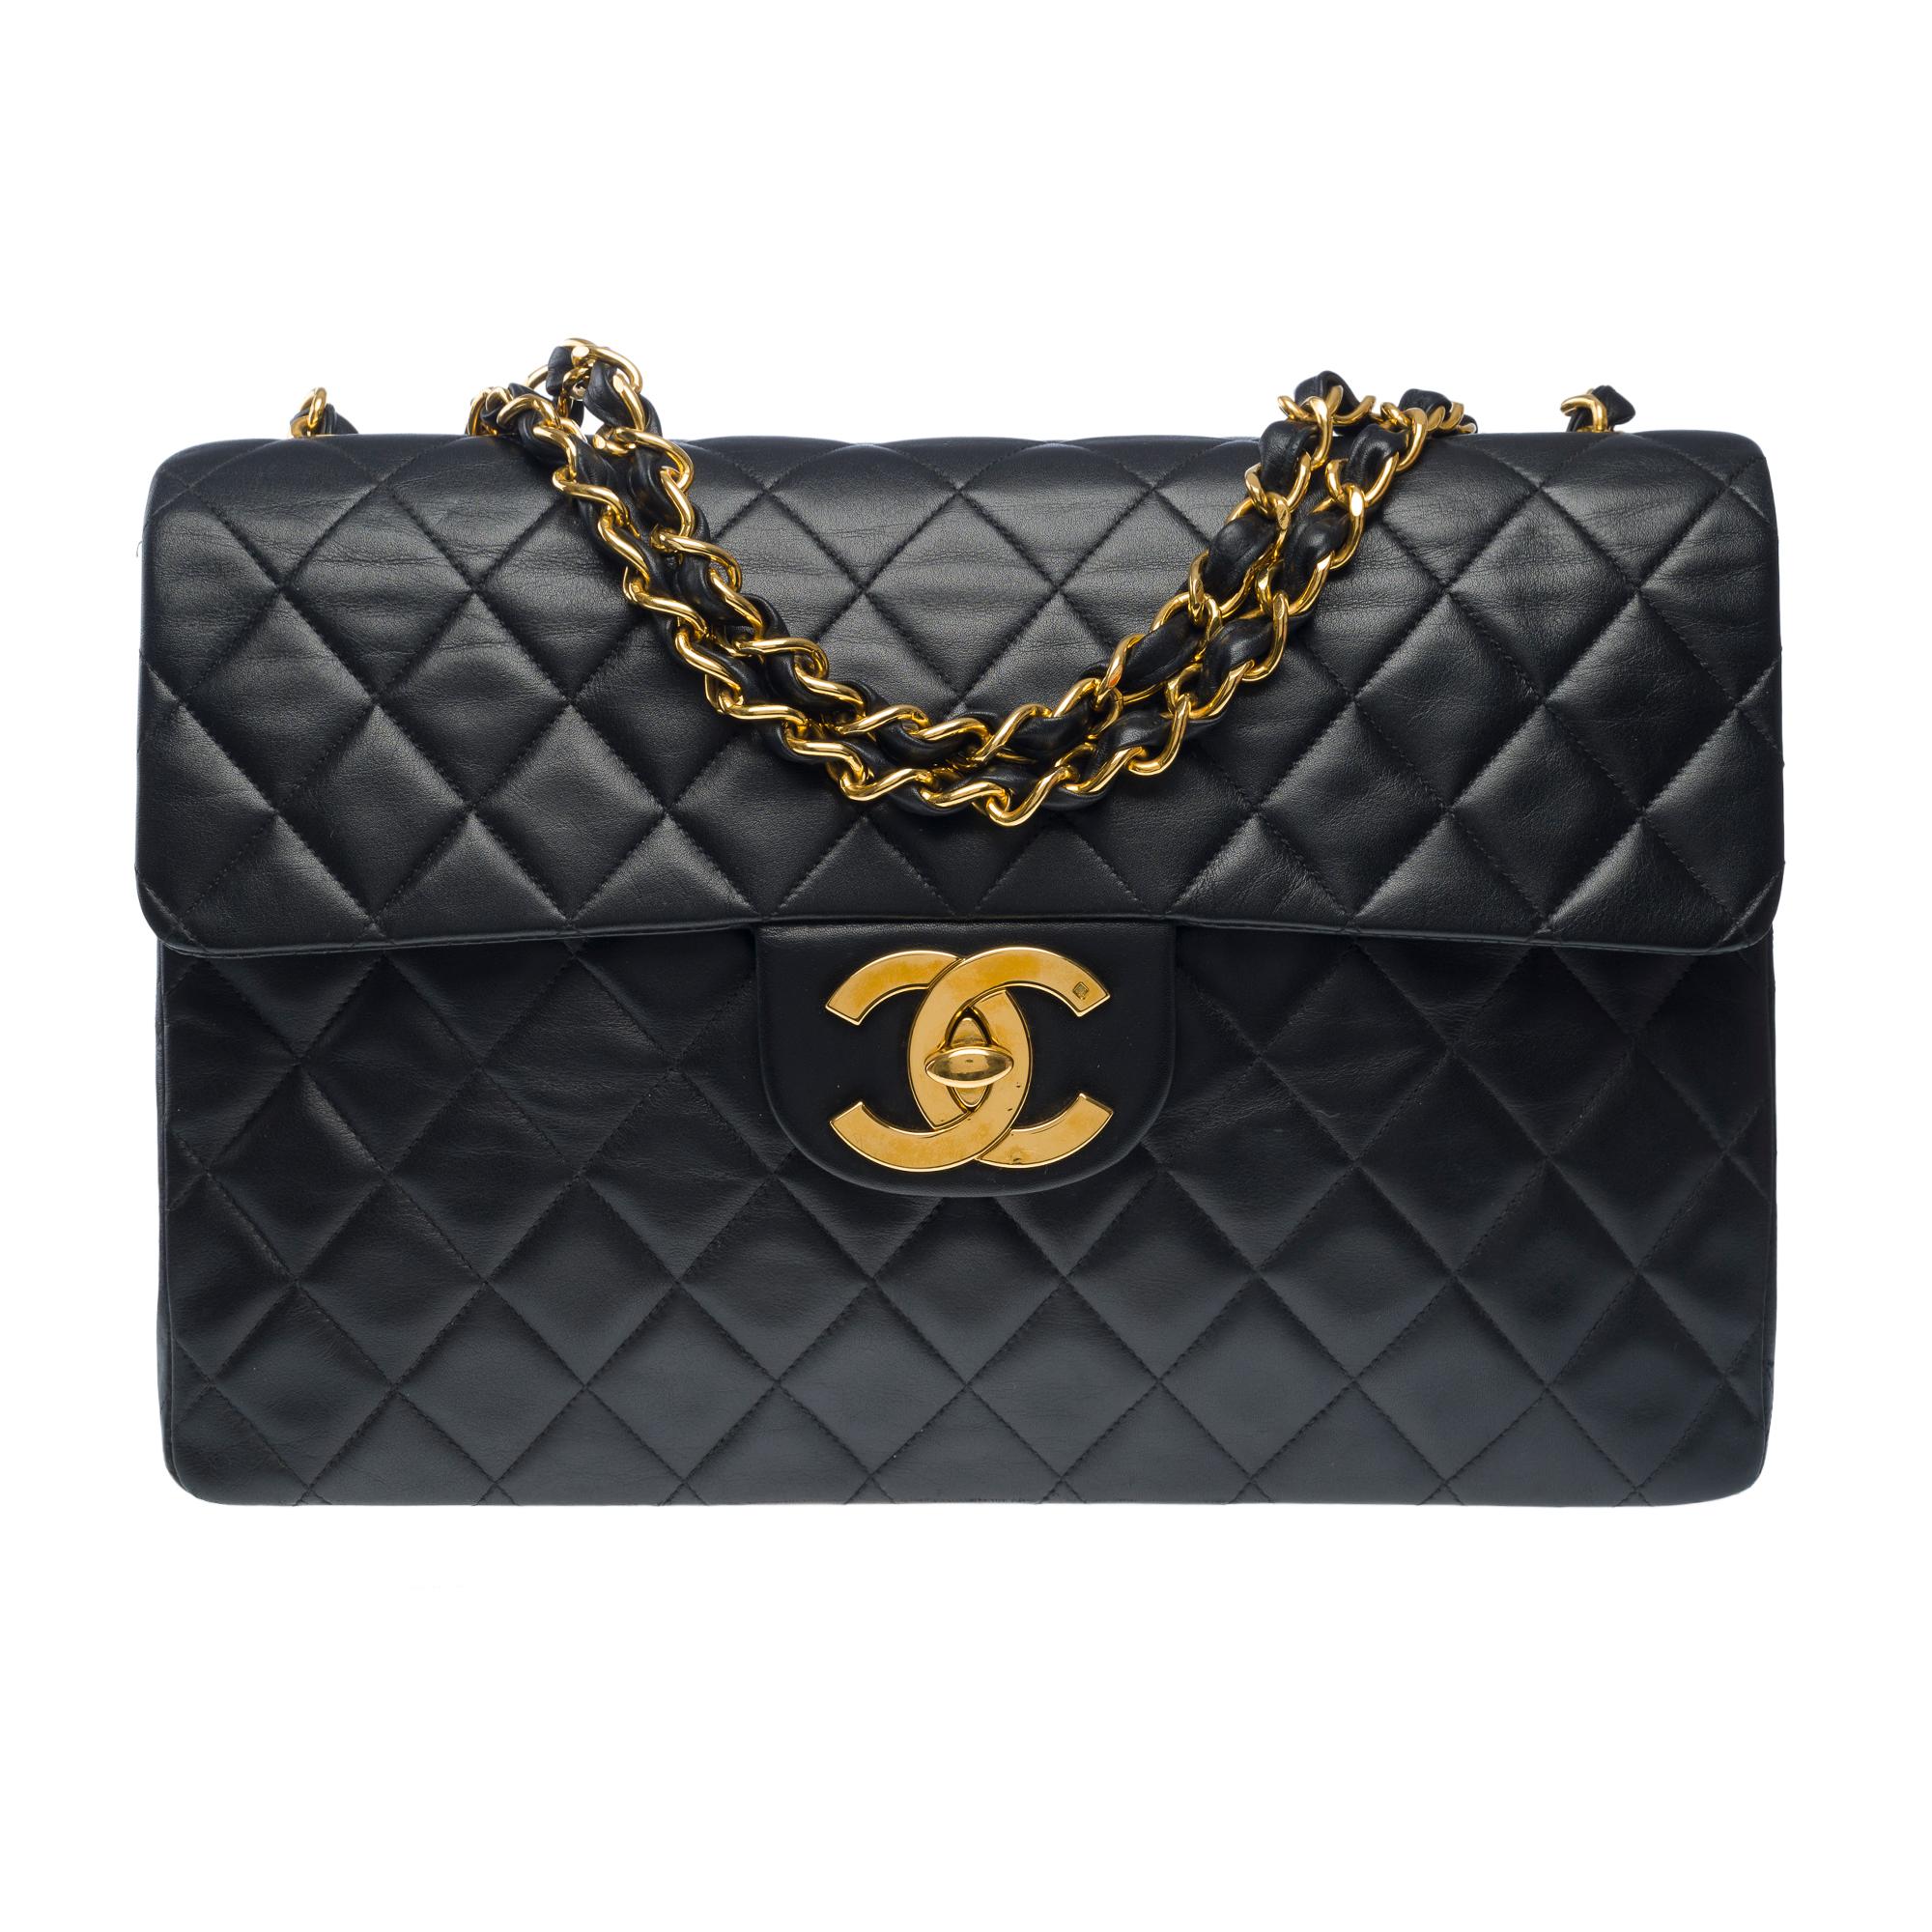 Majestic Chanel Timeless Maxi Jumbo Überschlagtasche aus schwarzem, gestepptem Lammleder, goldene Metallverzierungen, ein goldener Metallkettengriff, der mit schwarzem Leder verflochten ist, für eine Schulter- oder Crossbody-Tasche

Eine aufgesetzte